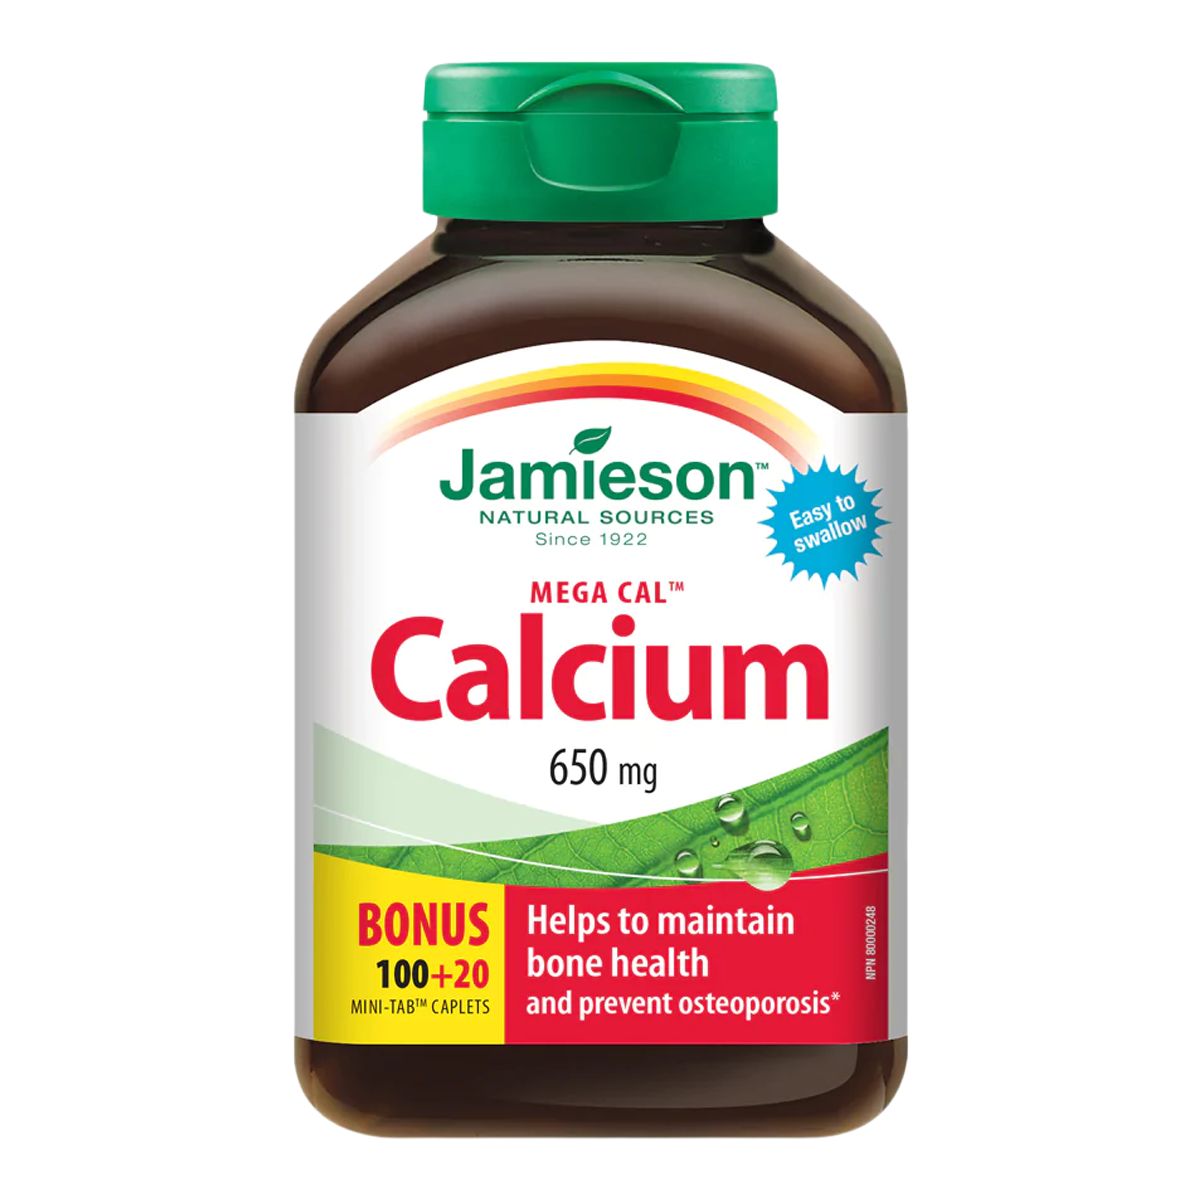 Image of Jamieson Calcium 650mg Bonus - 120 Caplets